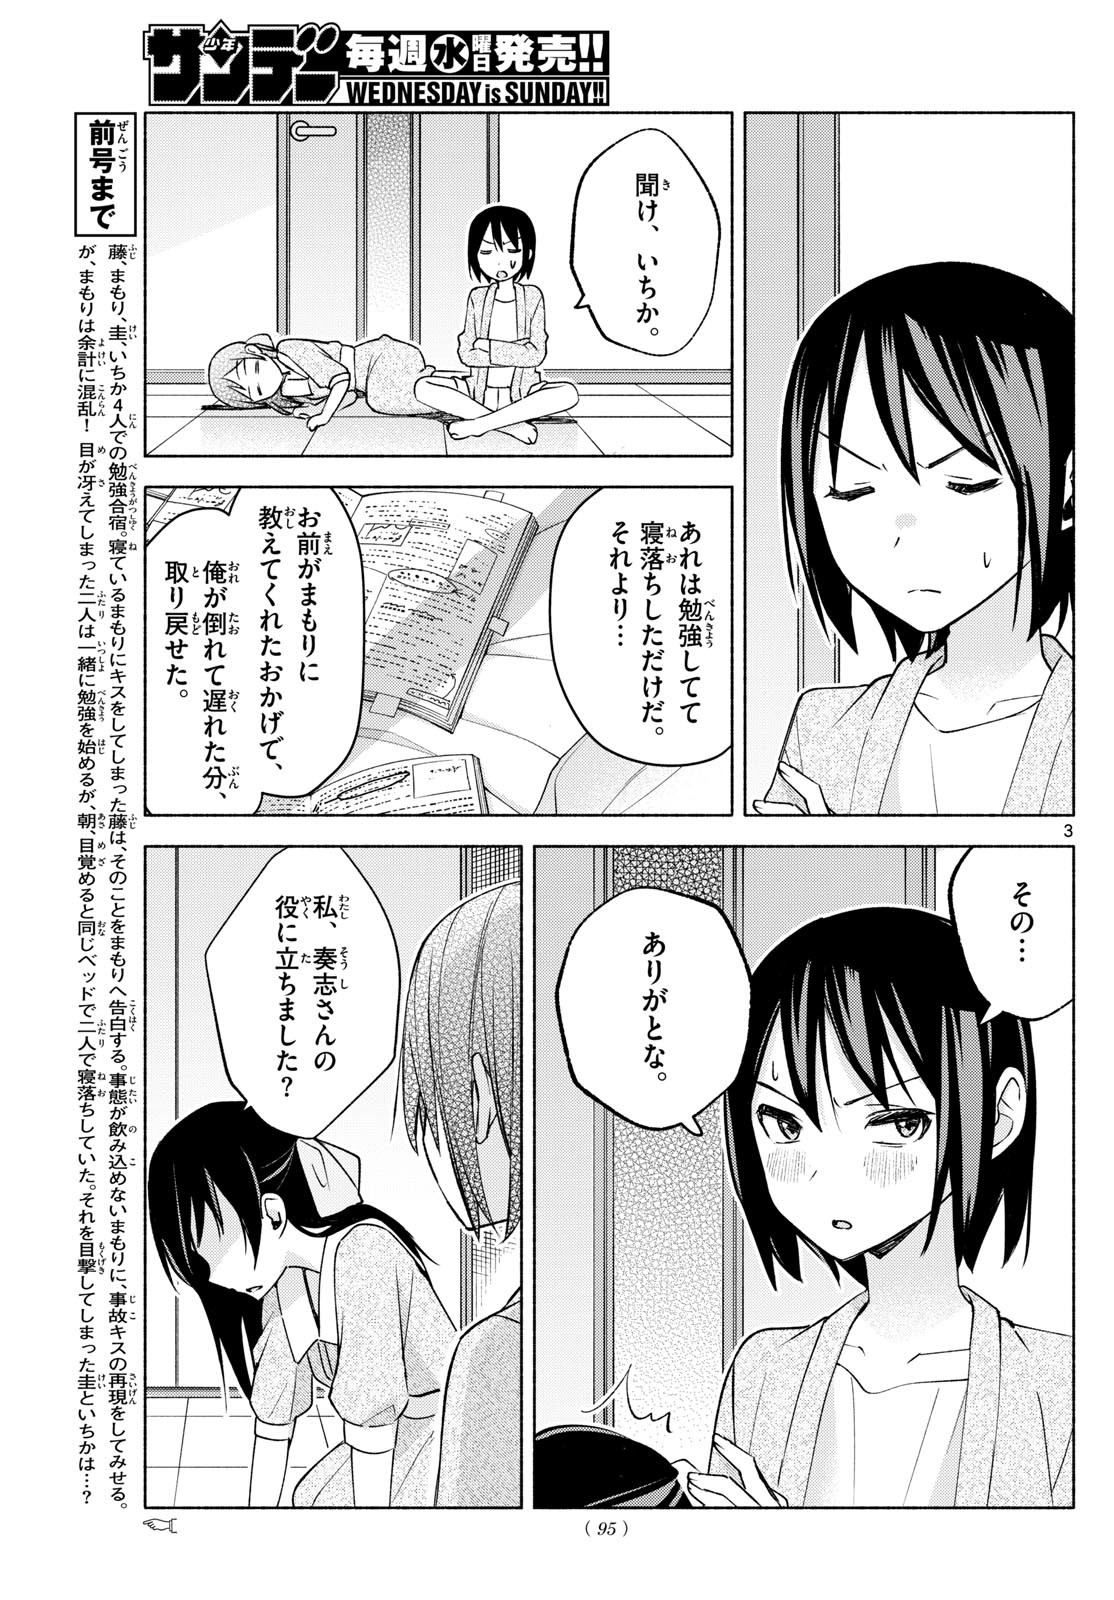 Kimi to Warui Koto ga Shitai - Chapter 035 - Page 3